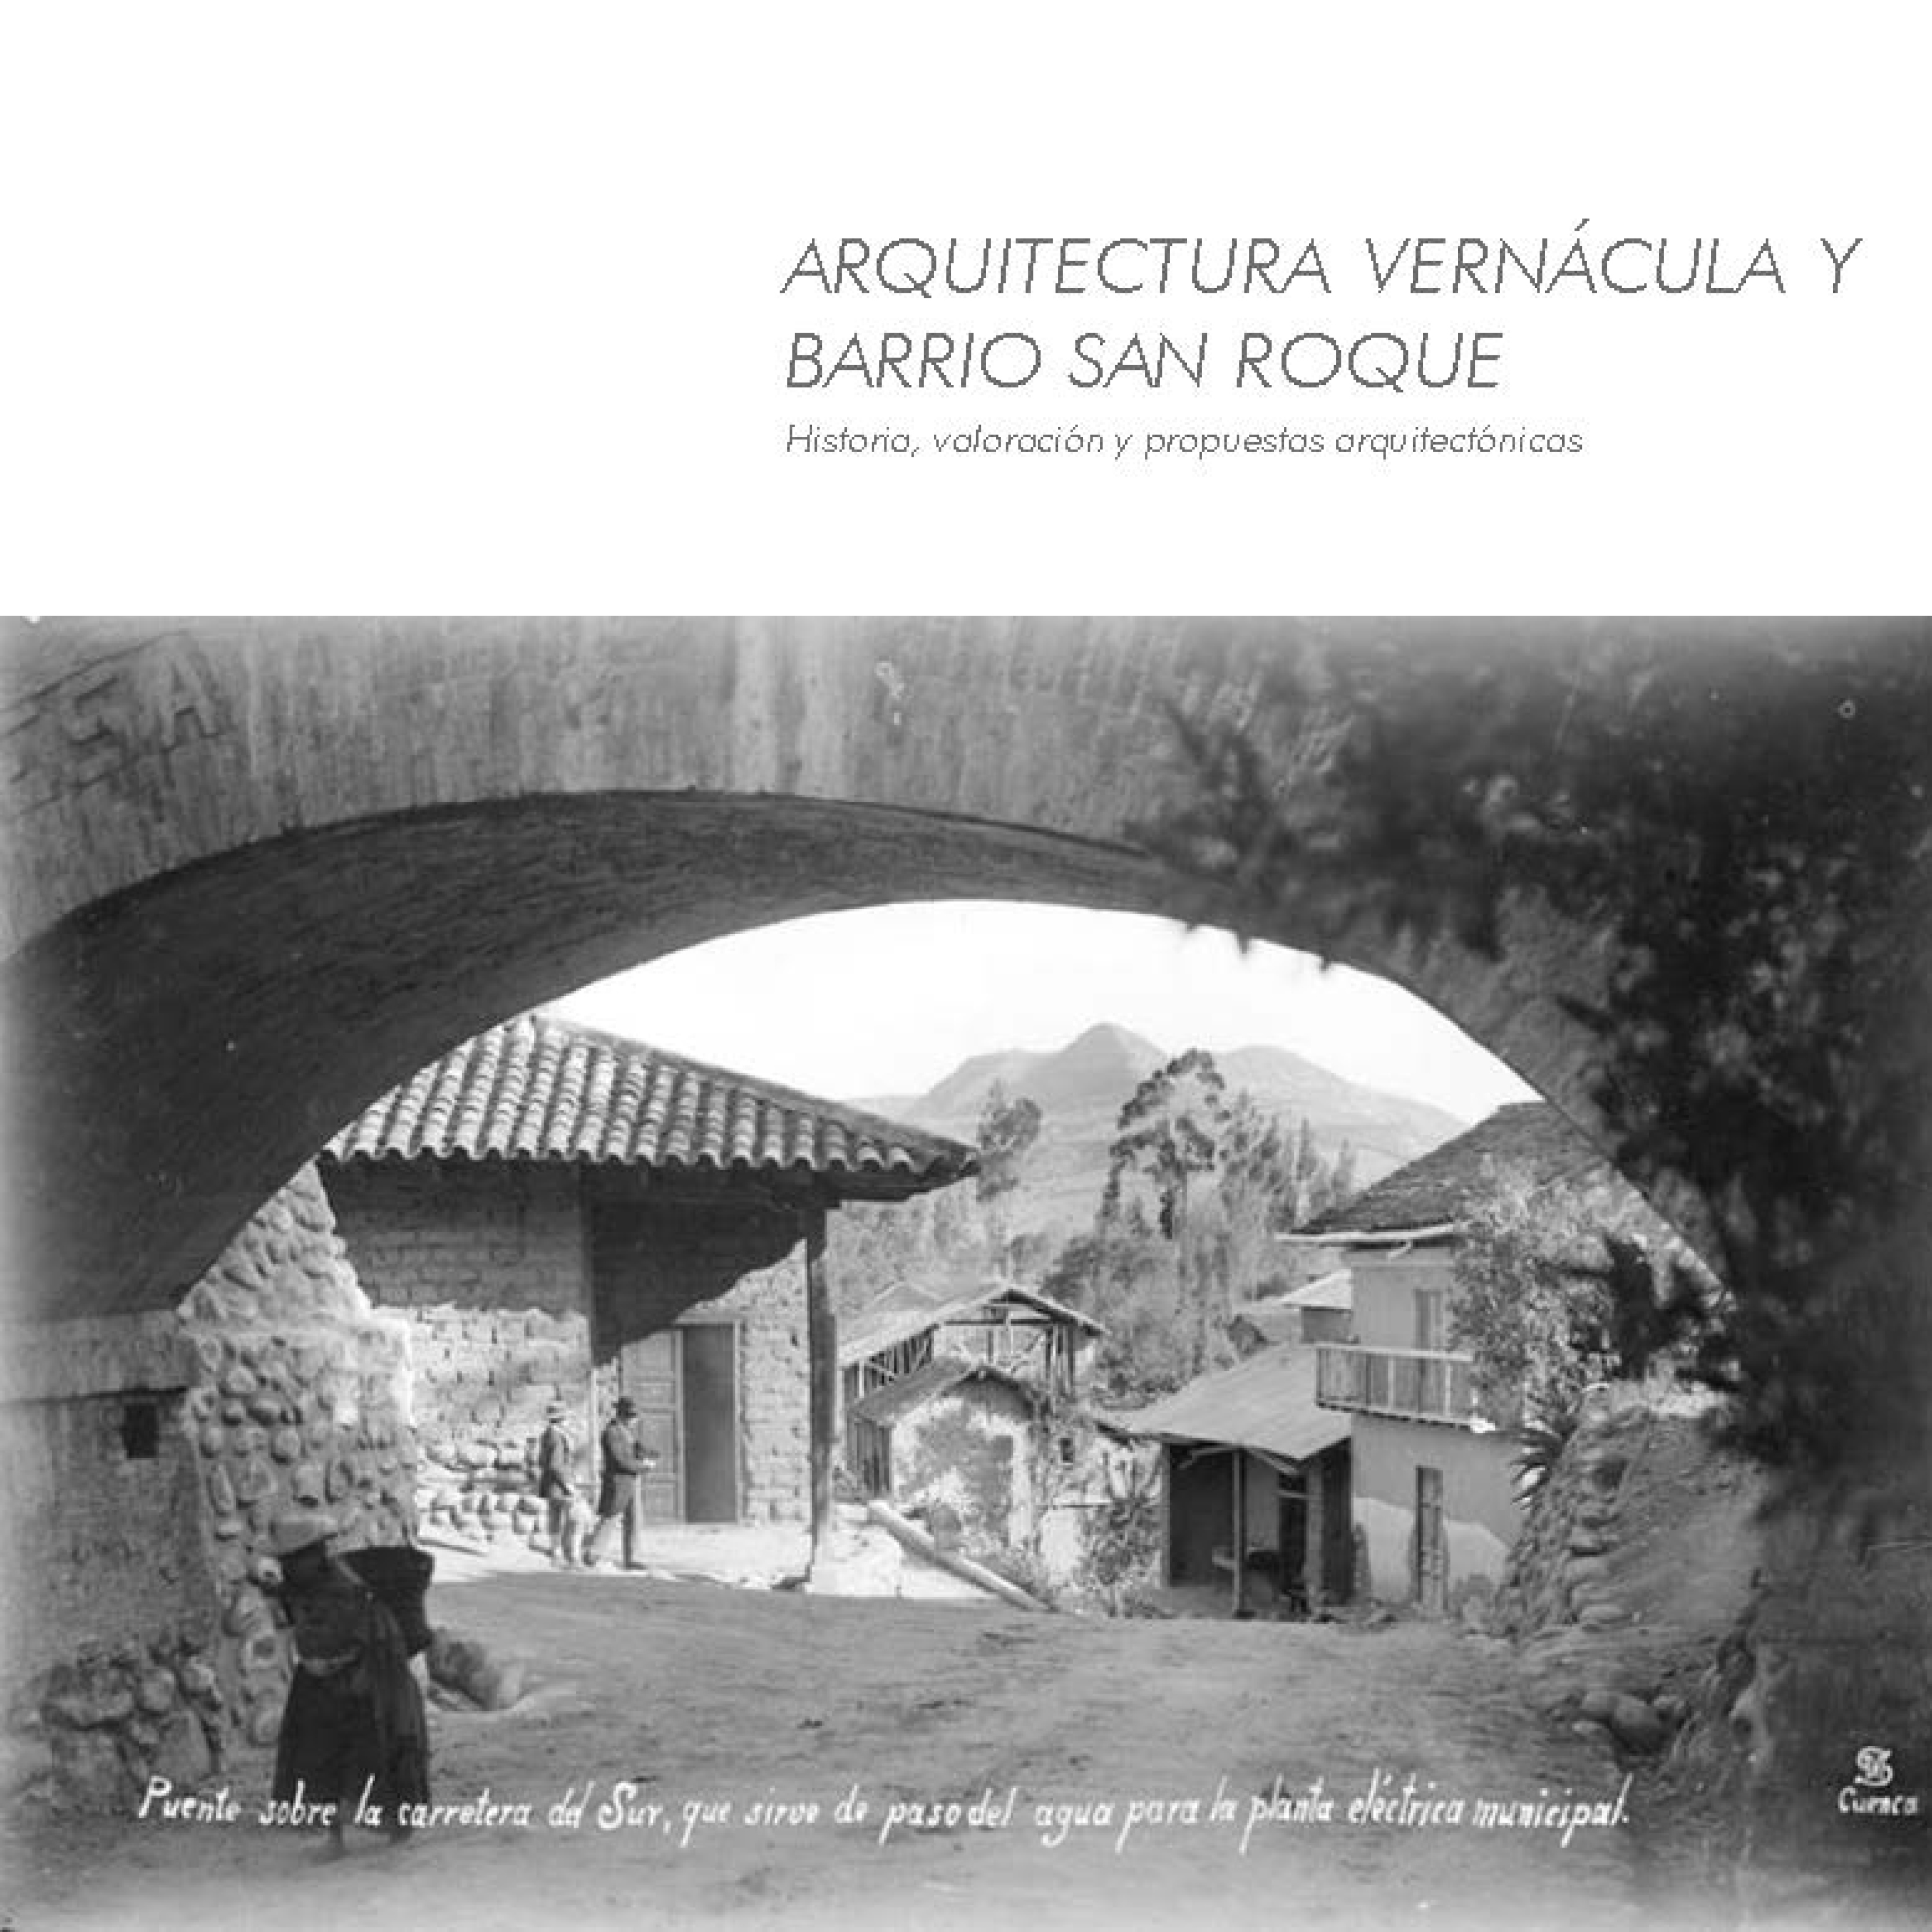 ARQUITECTURA VERNÁCULA Y BARRIO SAN ROQUE: HISTORIA, VALORACIÓN Y PROPUESTAS ARQUITECTÓNICAS